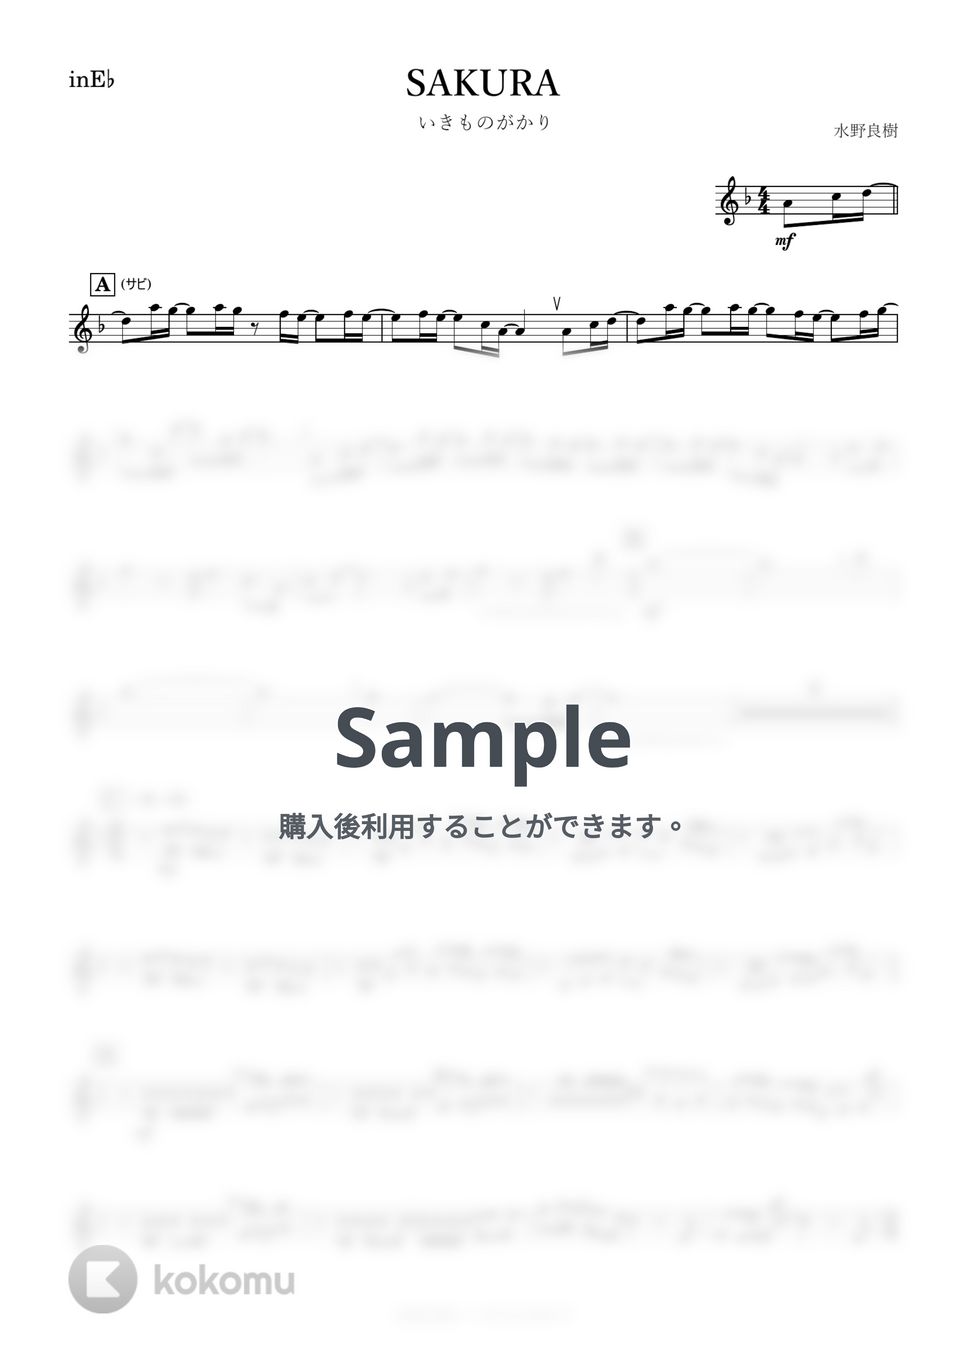 いきものがかり - SAKURA (E♭) by kanamusic